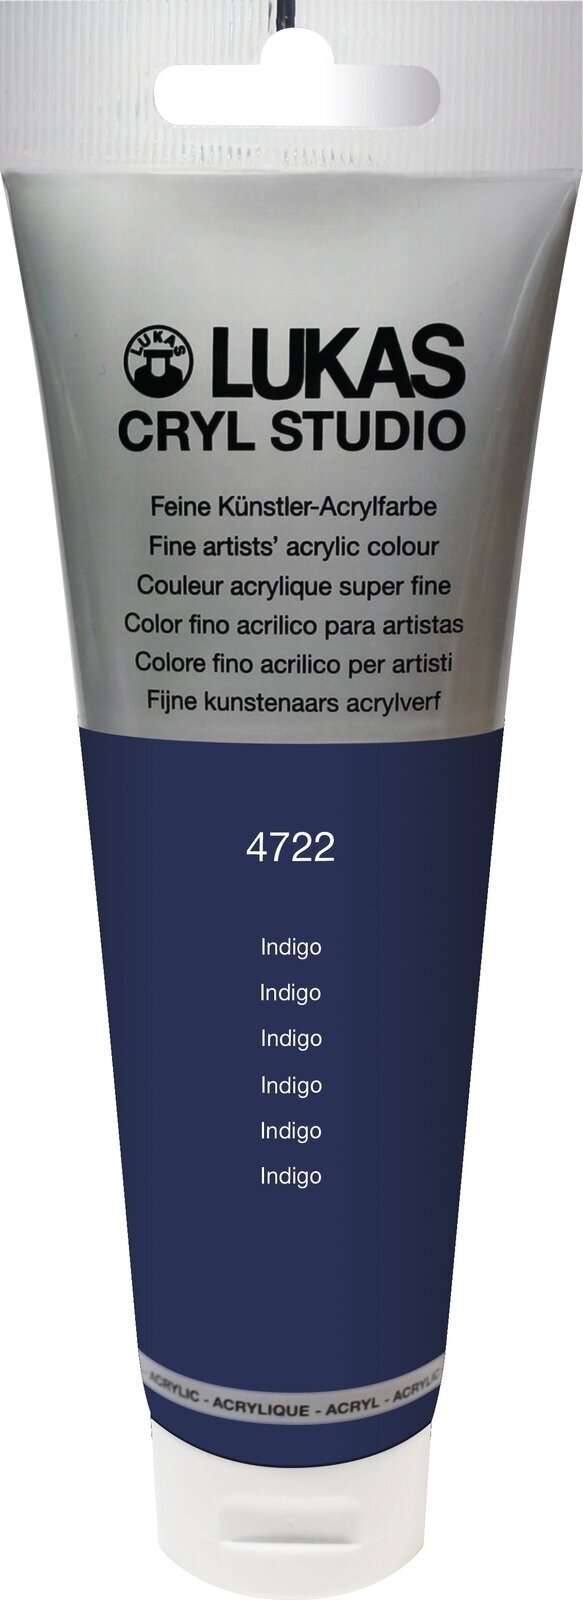 Tinta acrílica Lukas Cryl Studio Acrylic Paint Plastic Tube Tinta acrílica Indigo 125 ml 1 un.